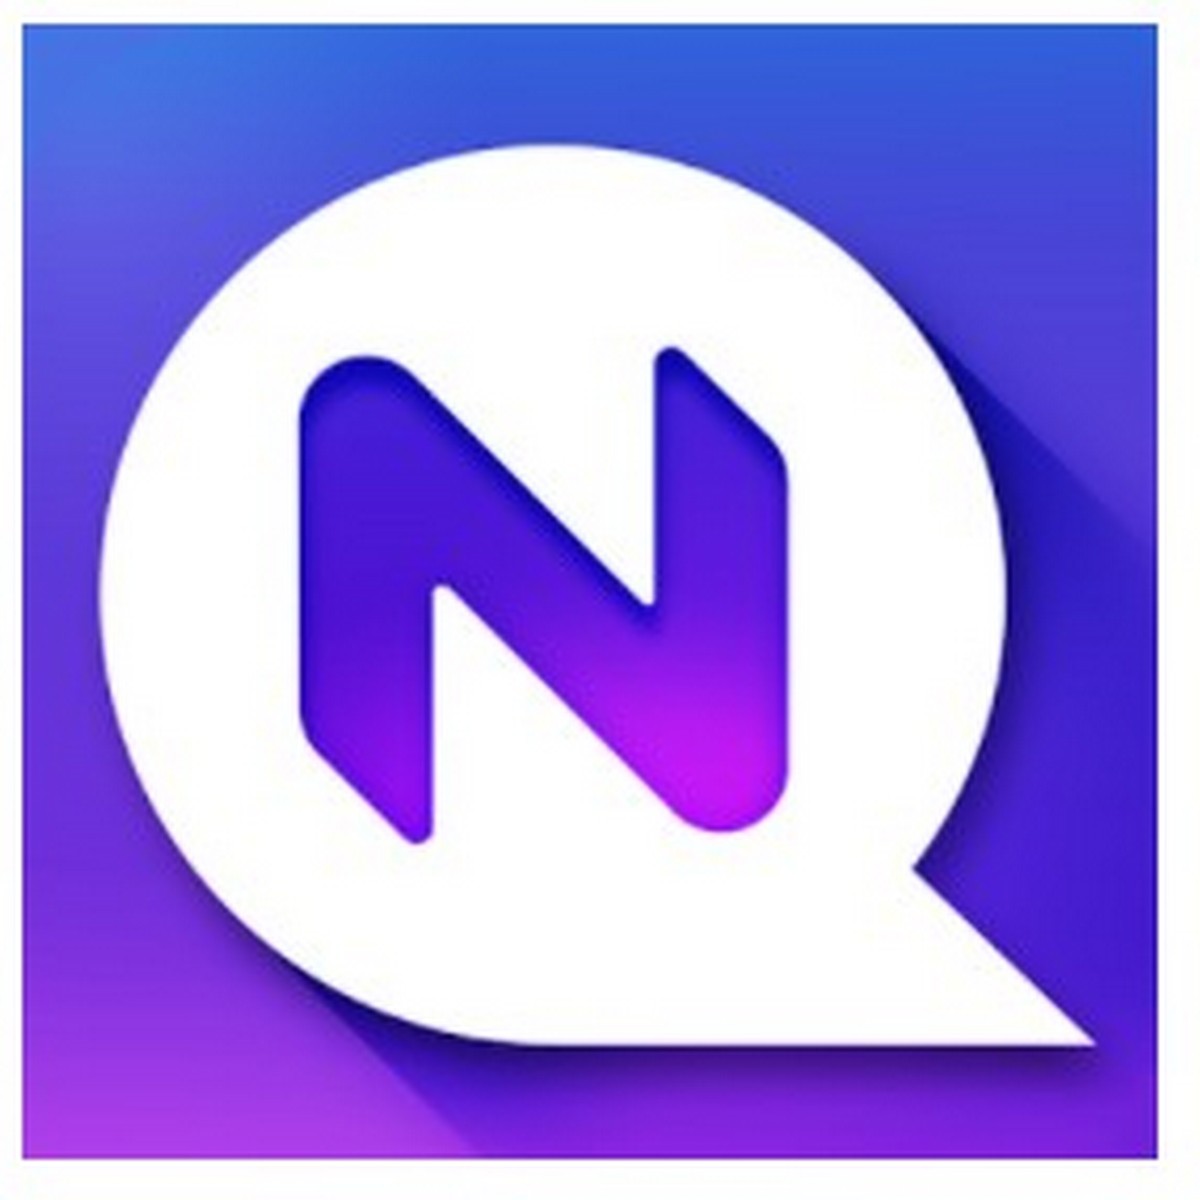 загрузить вредоносное ПО netqin для телефона Android